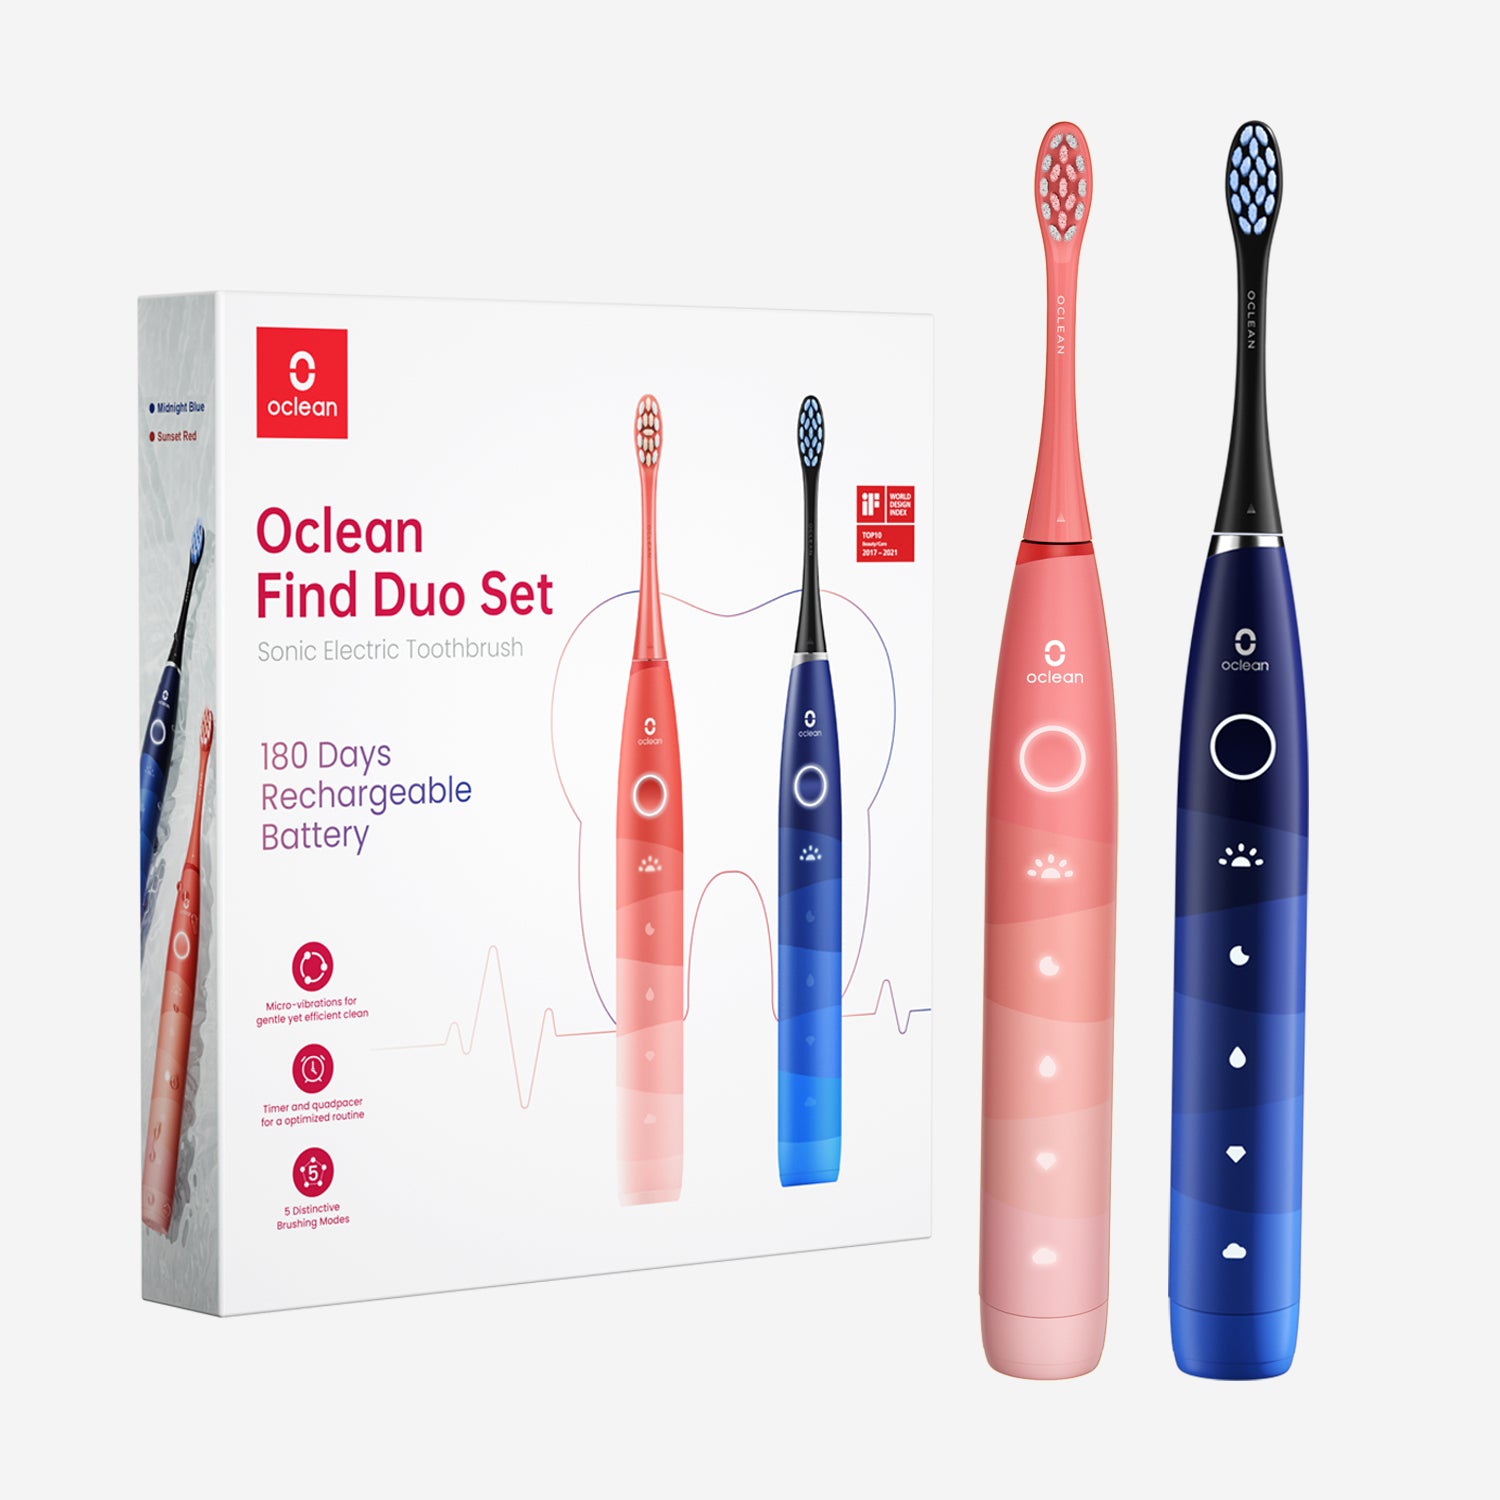 Cepillo de dientes Oclean Find Duo Set